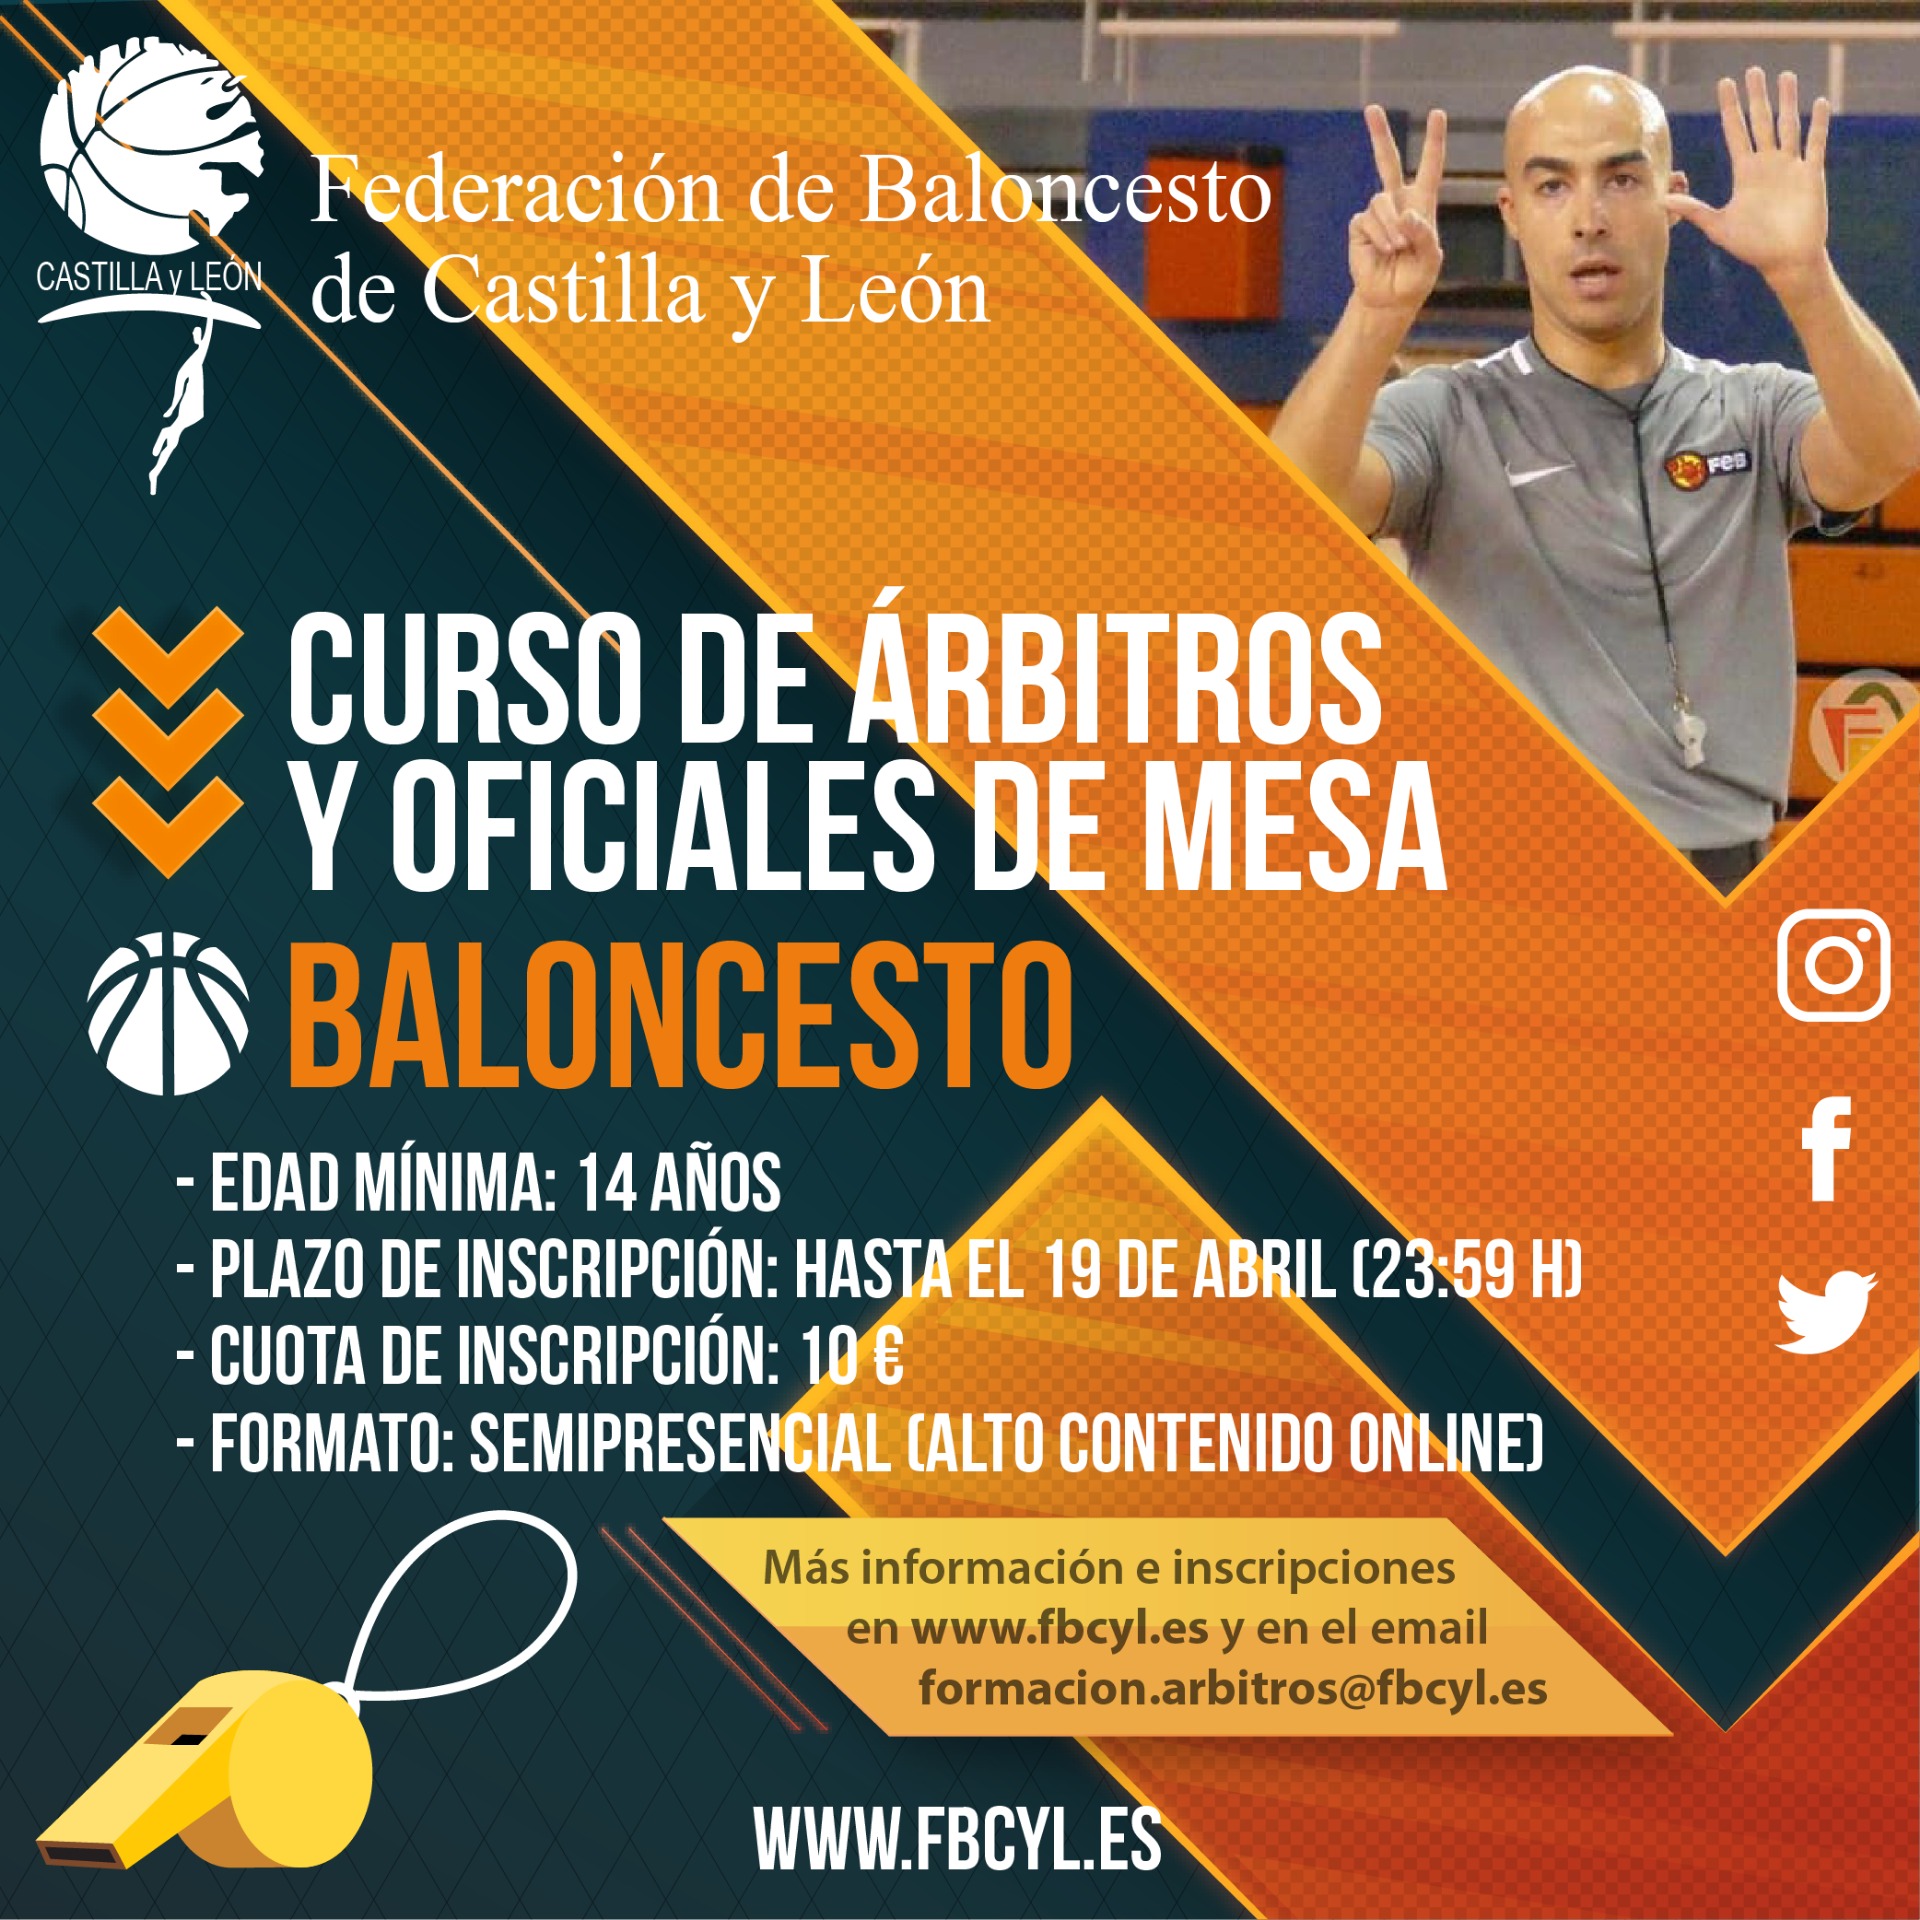 Federación de Baloncesto de Castilla y León: Curso de iniciación al arbitraje de Baloncesto